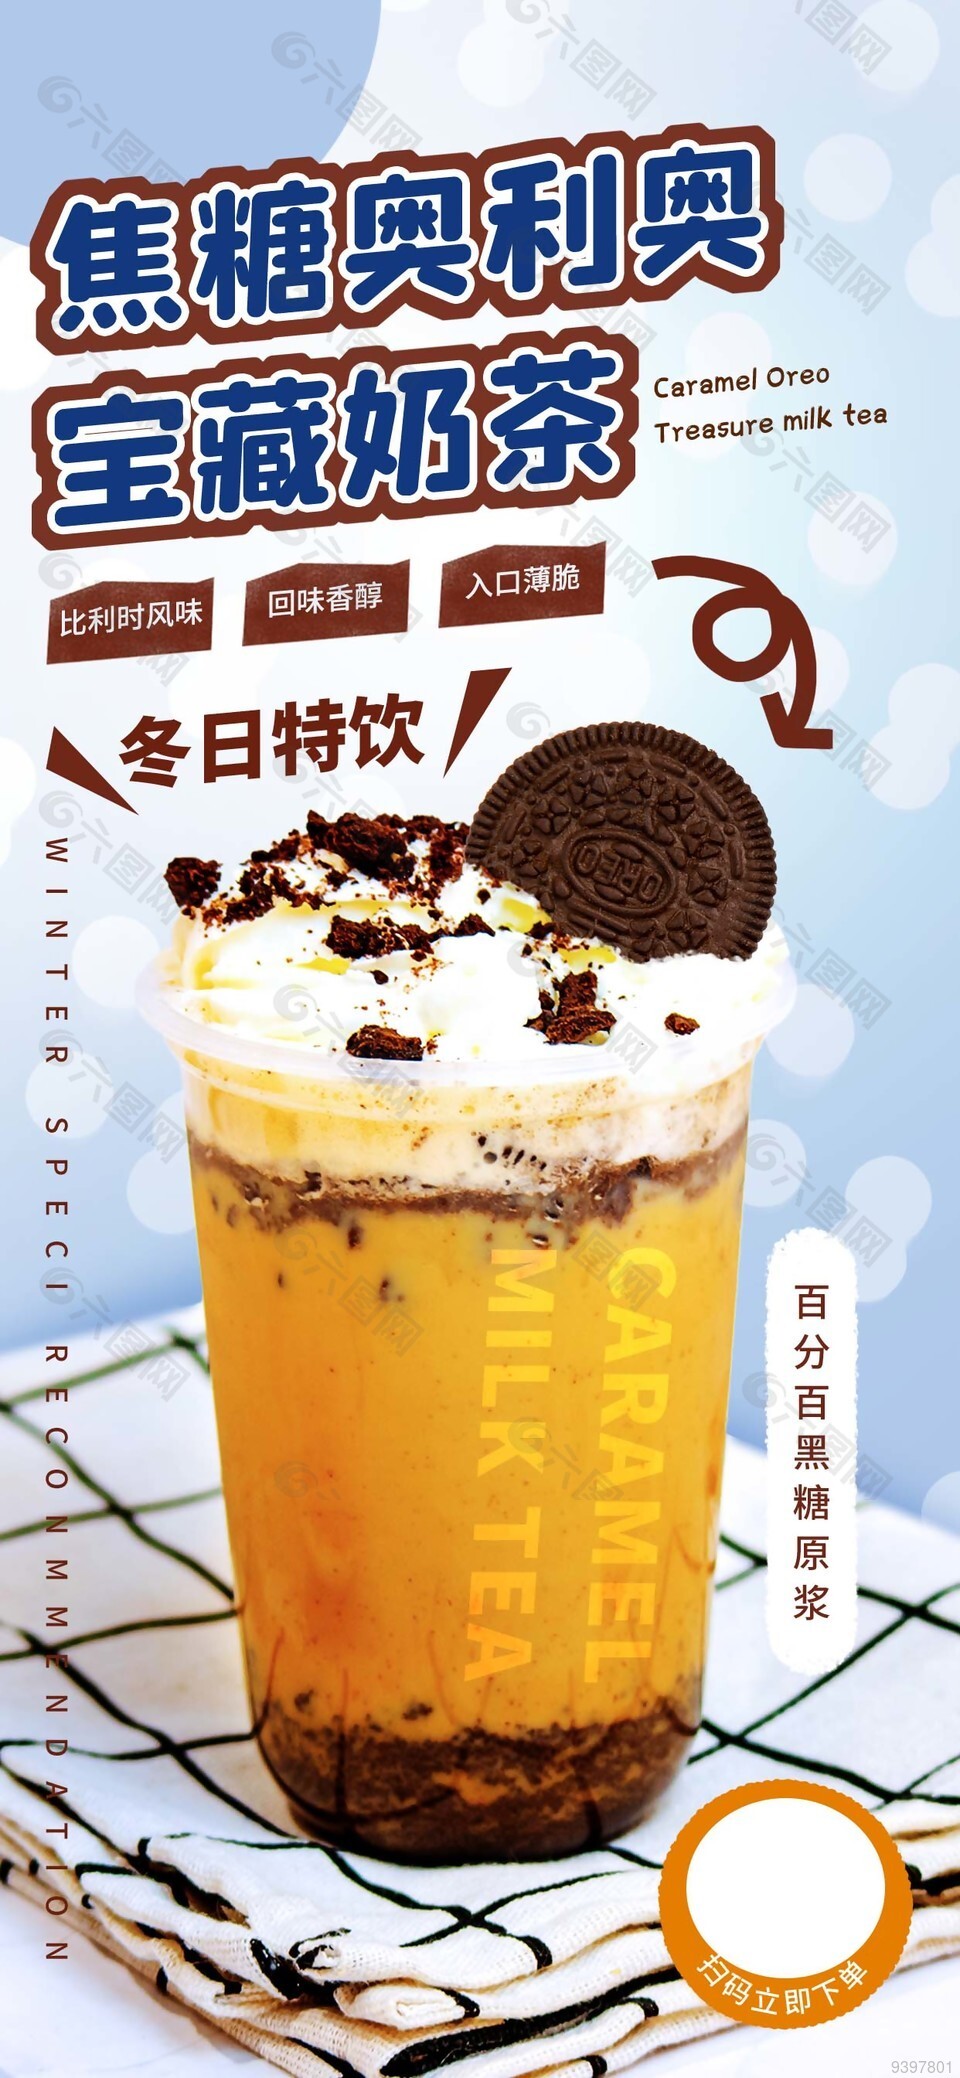 冬日热饮宝藏奶茶宣传海报设计